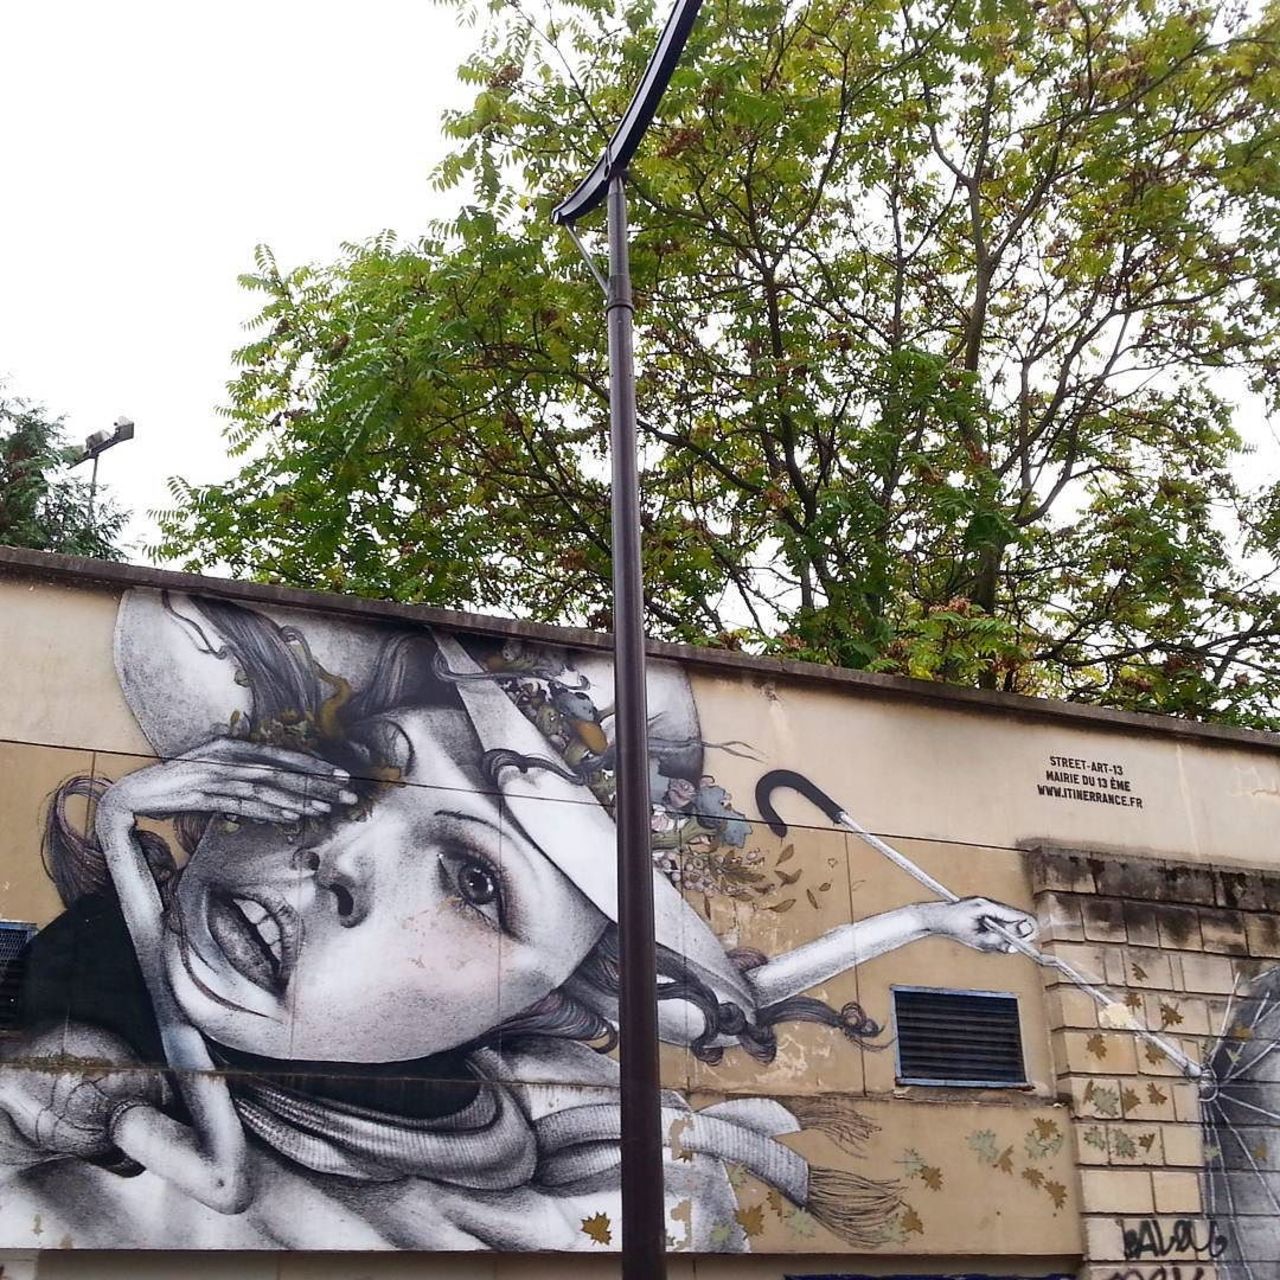 #Paris #graffiti photo by @fotoflaneuse http://ift.tt/1RpdSMV #StreetArt https://t.co/ykIrz1oeK5